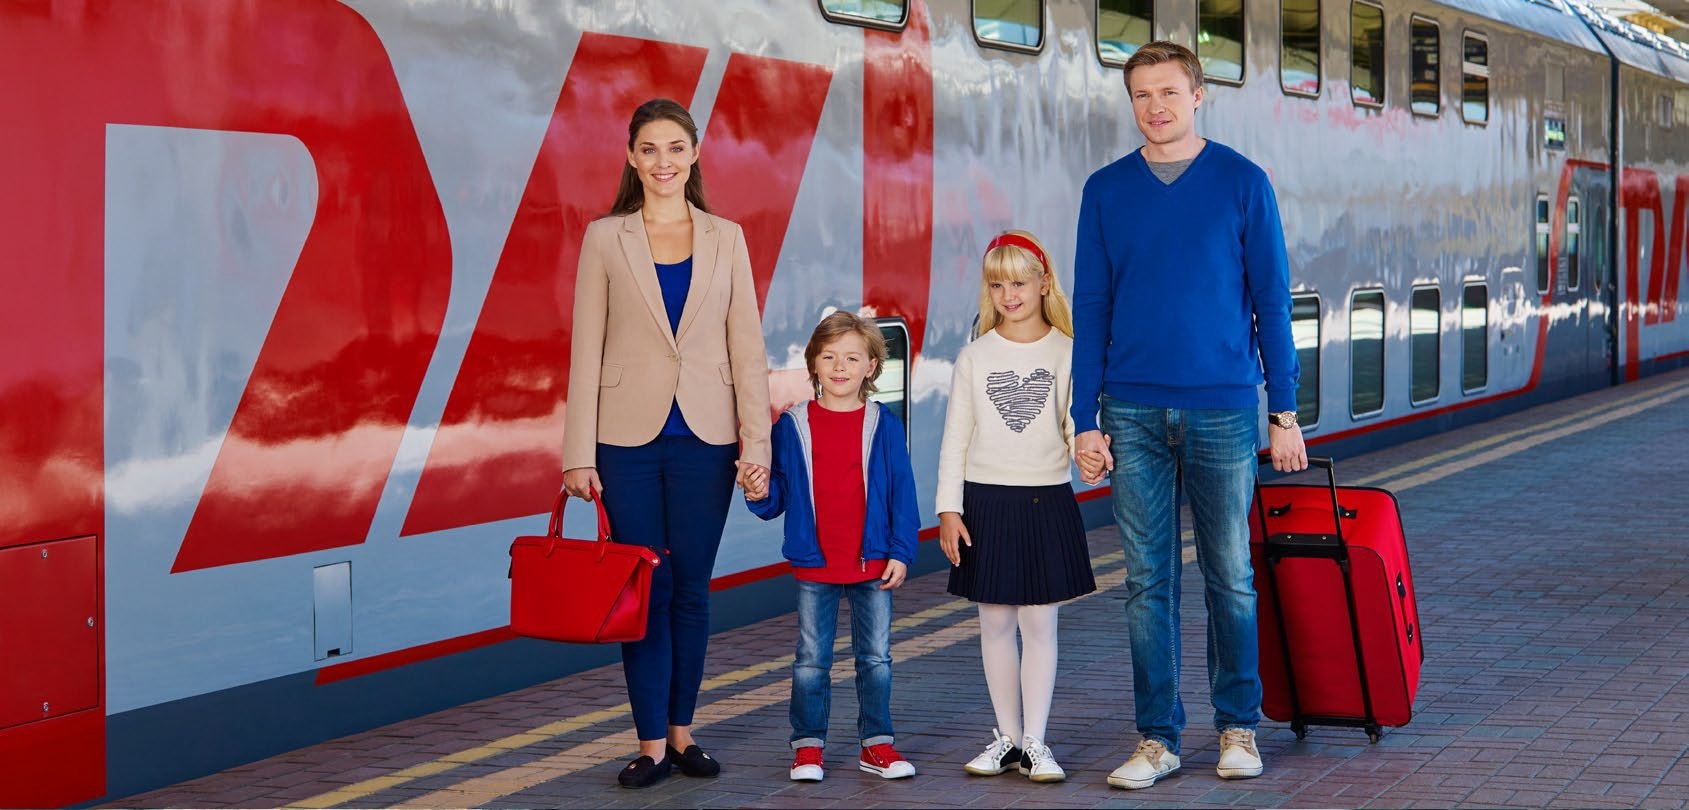 Тариф счастливые каникулы ржд. Путешествие на поезде семьей. Счастливые дети в поезде. Счастливая семья в поезде. Поездка на поезде с детьми.